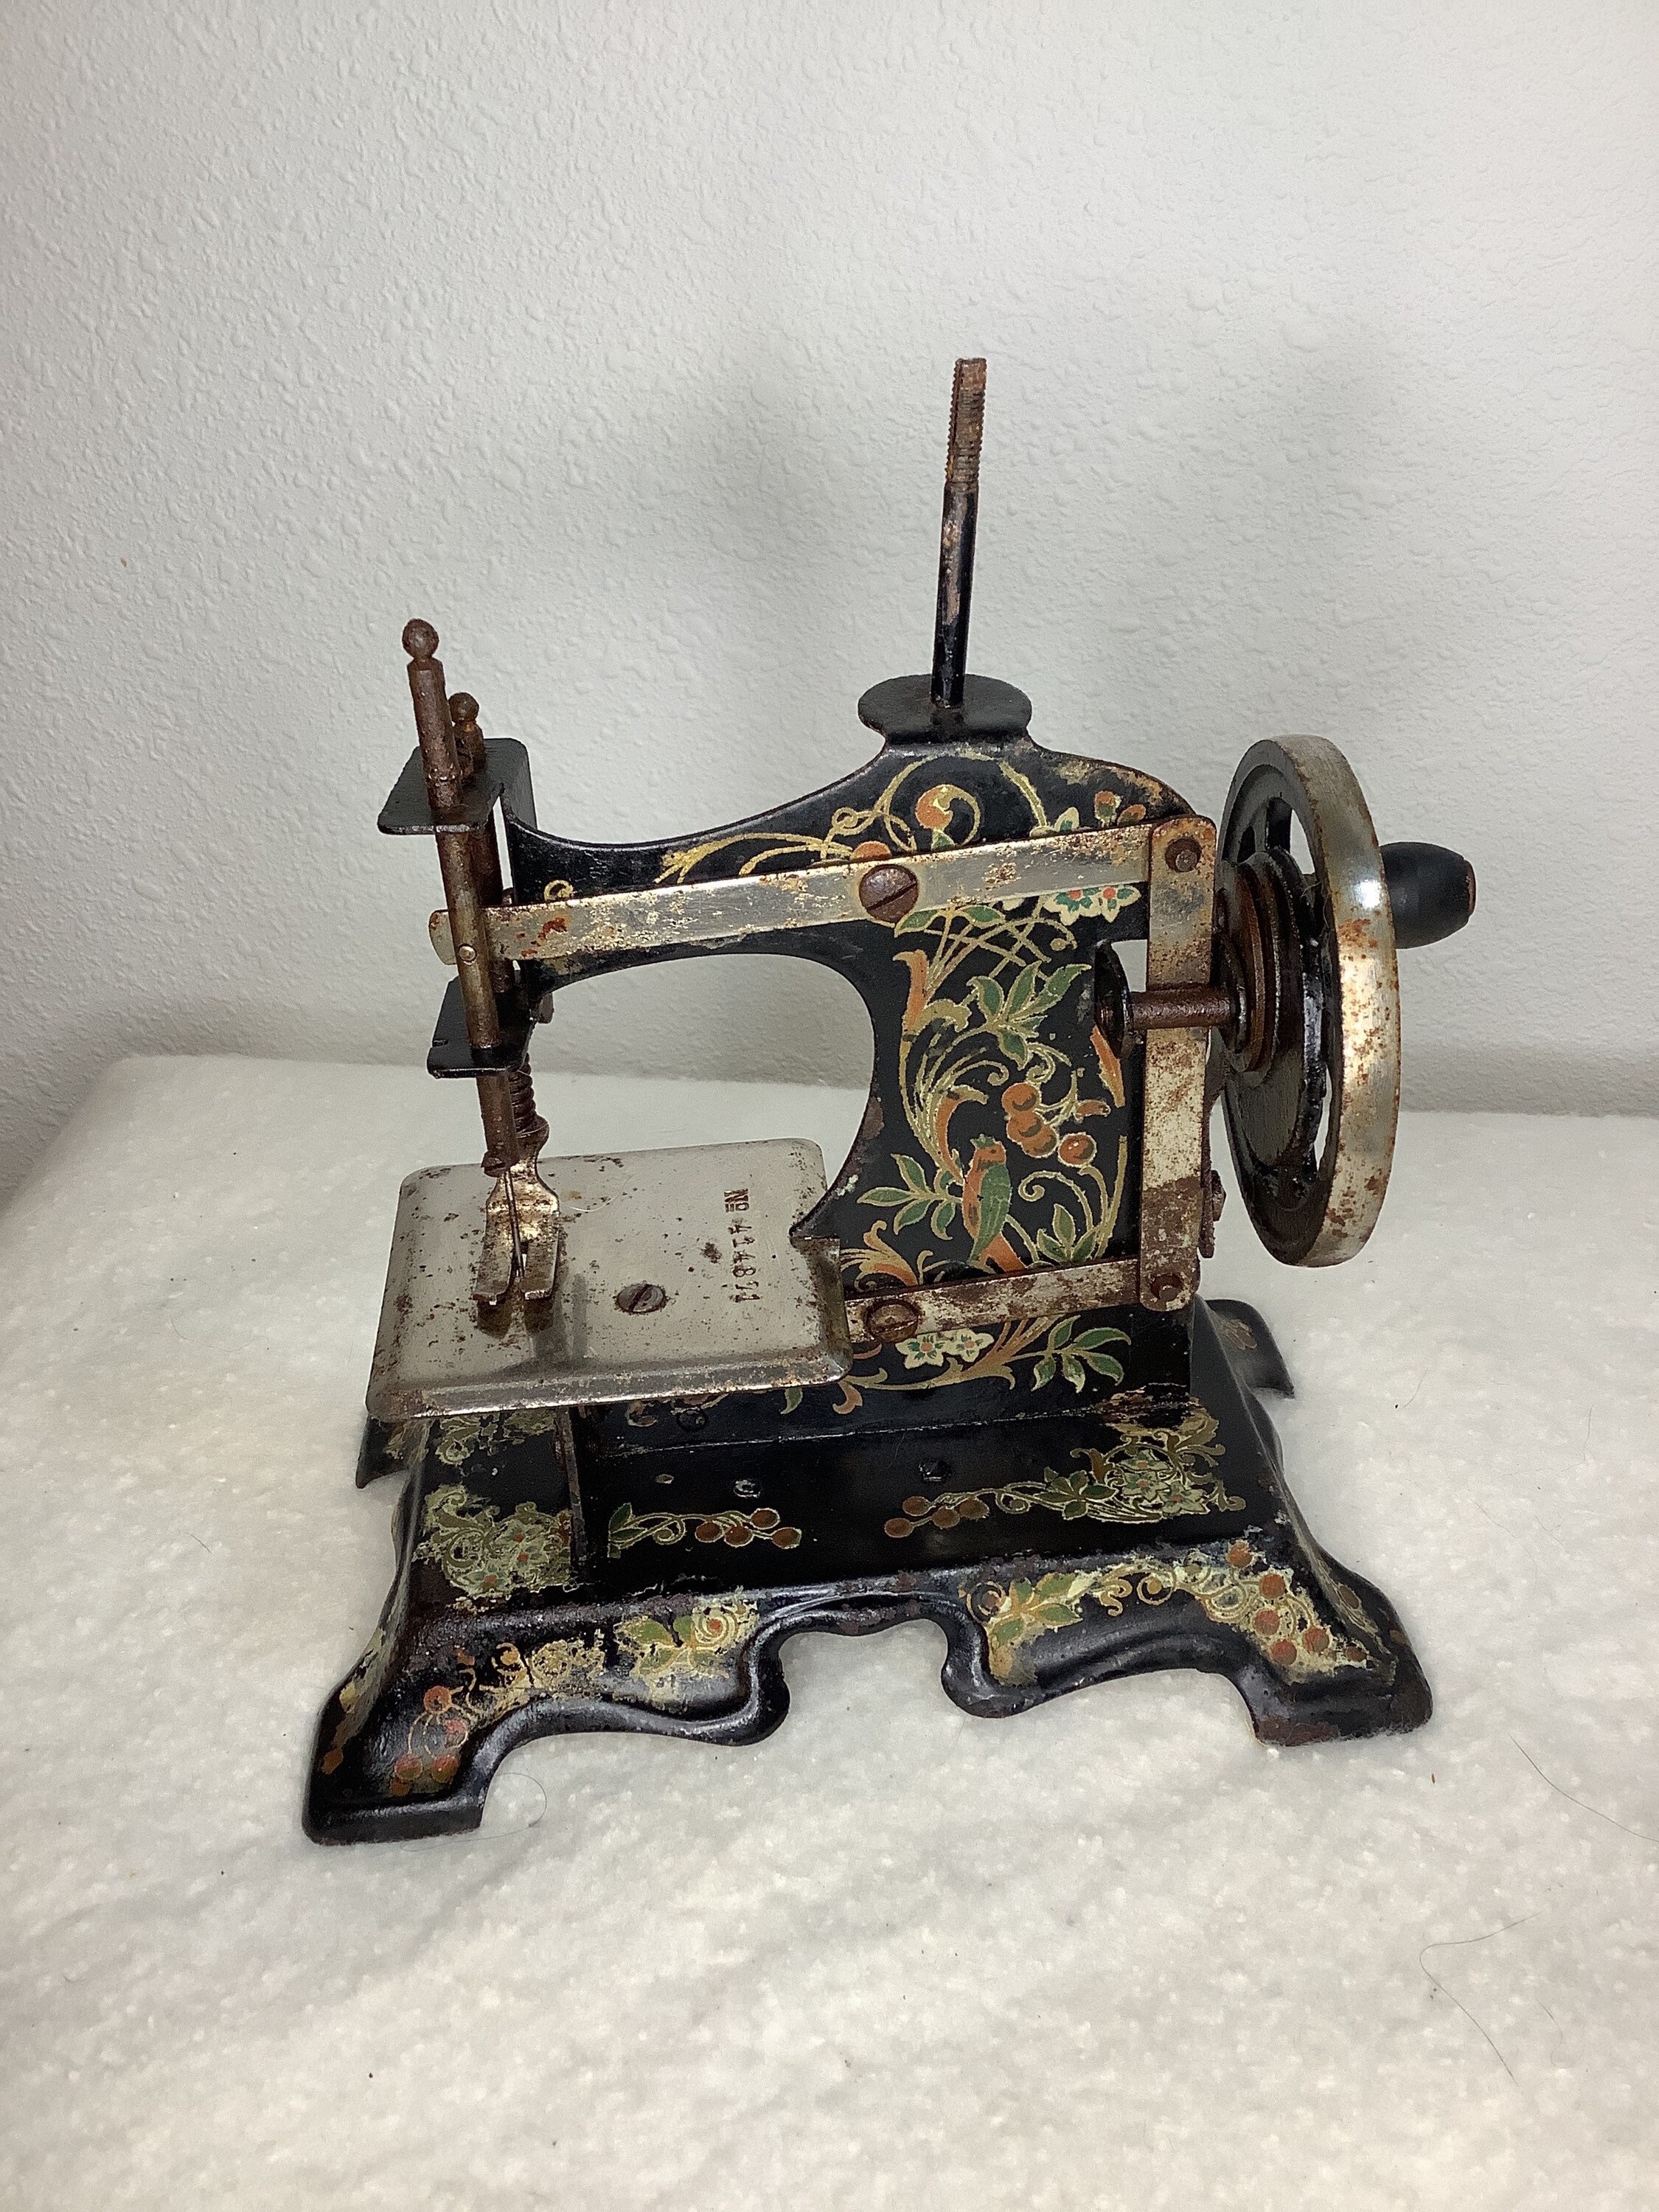 Vtg Zig Zag Sew-ette Mini Portable Sewing Machine 